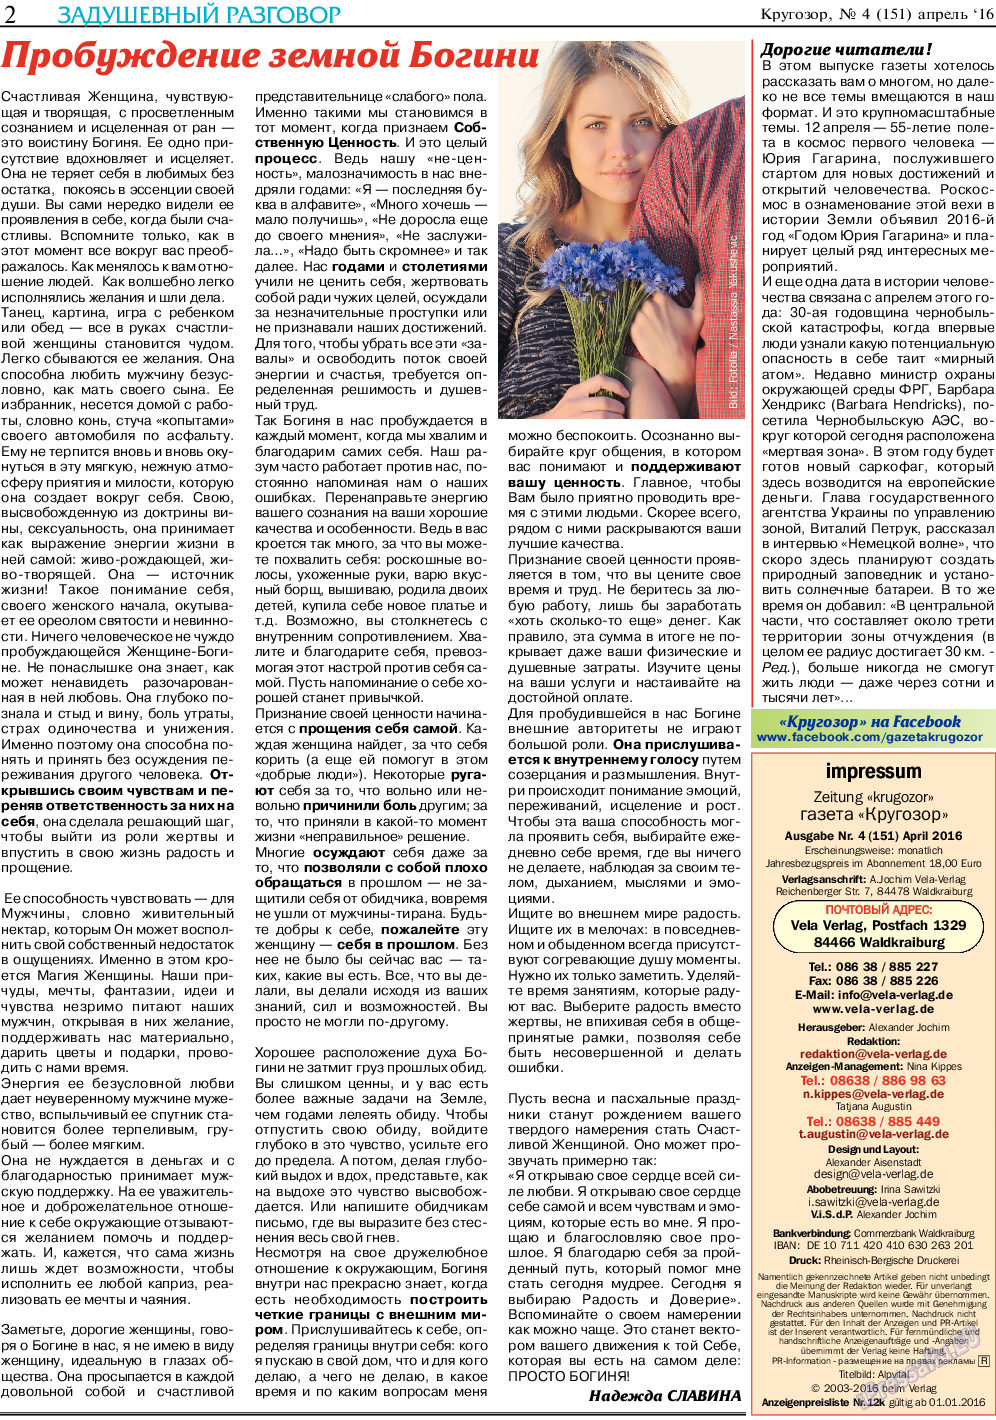 Кругозор, газета. 2016 №4 стр.2